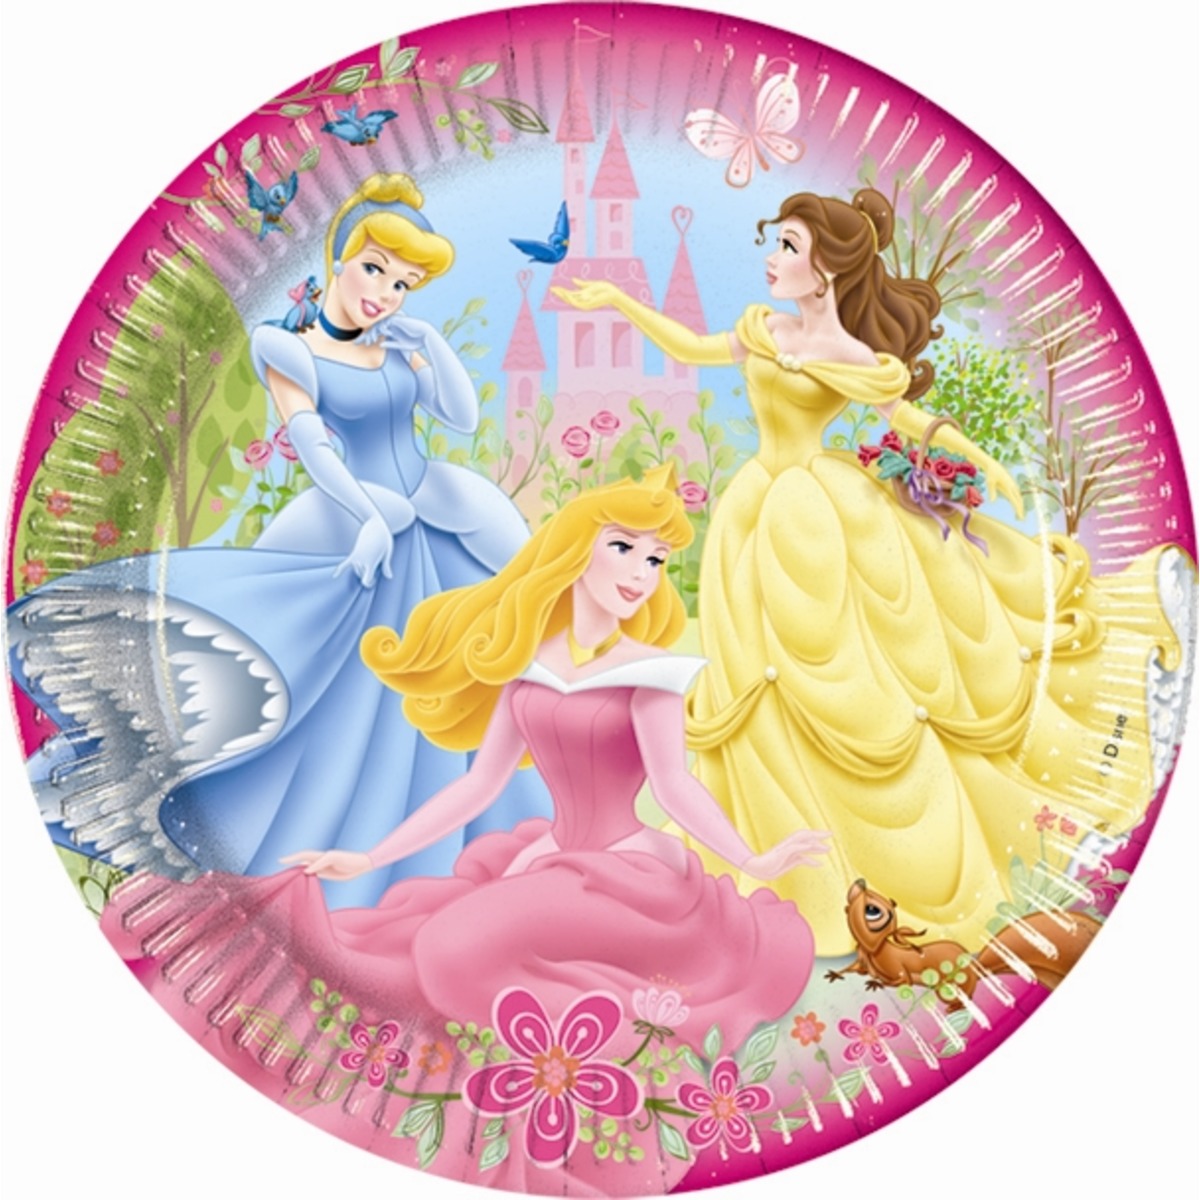 VegaooParty anniversaire princesse Disney : Vente d'articles